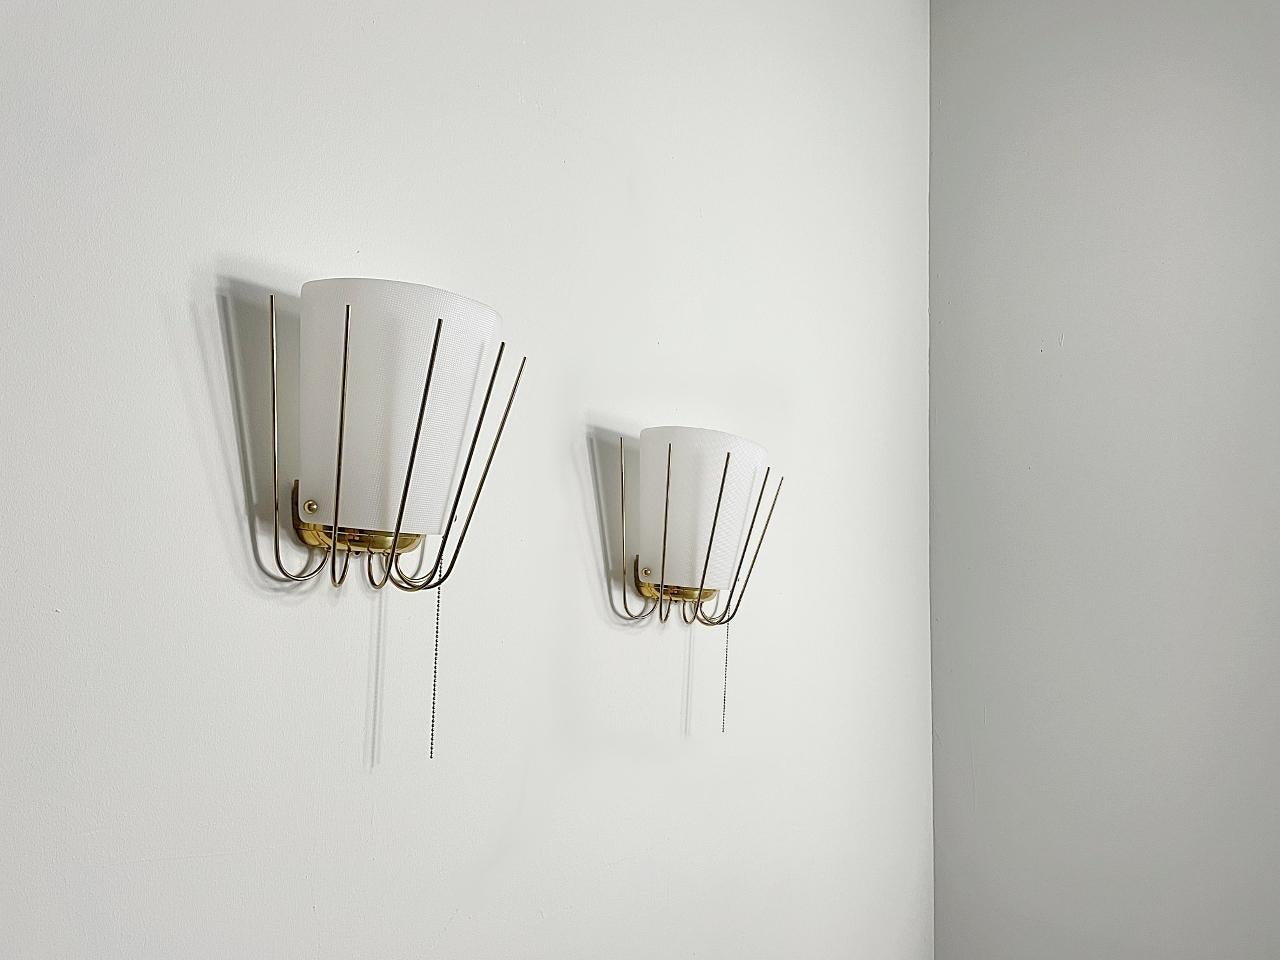 Bellissime applique moderniste realizzate da J.T. Kalmar negli anni '50. La lampada è realizzata in ottone lucido e i paralumi sono in vetro acrilico. Il vetro acrilico sfaccettato offre una luce omogenea su un'ampia superficie.
Completamente